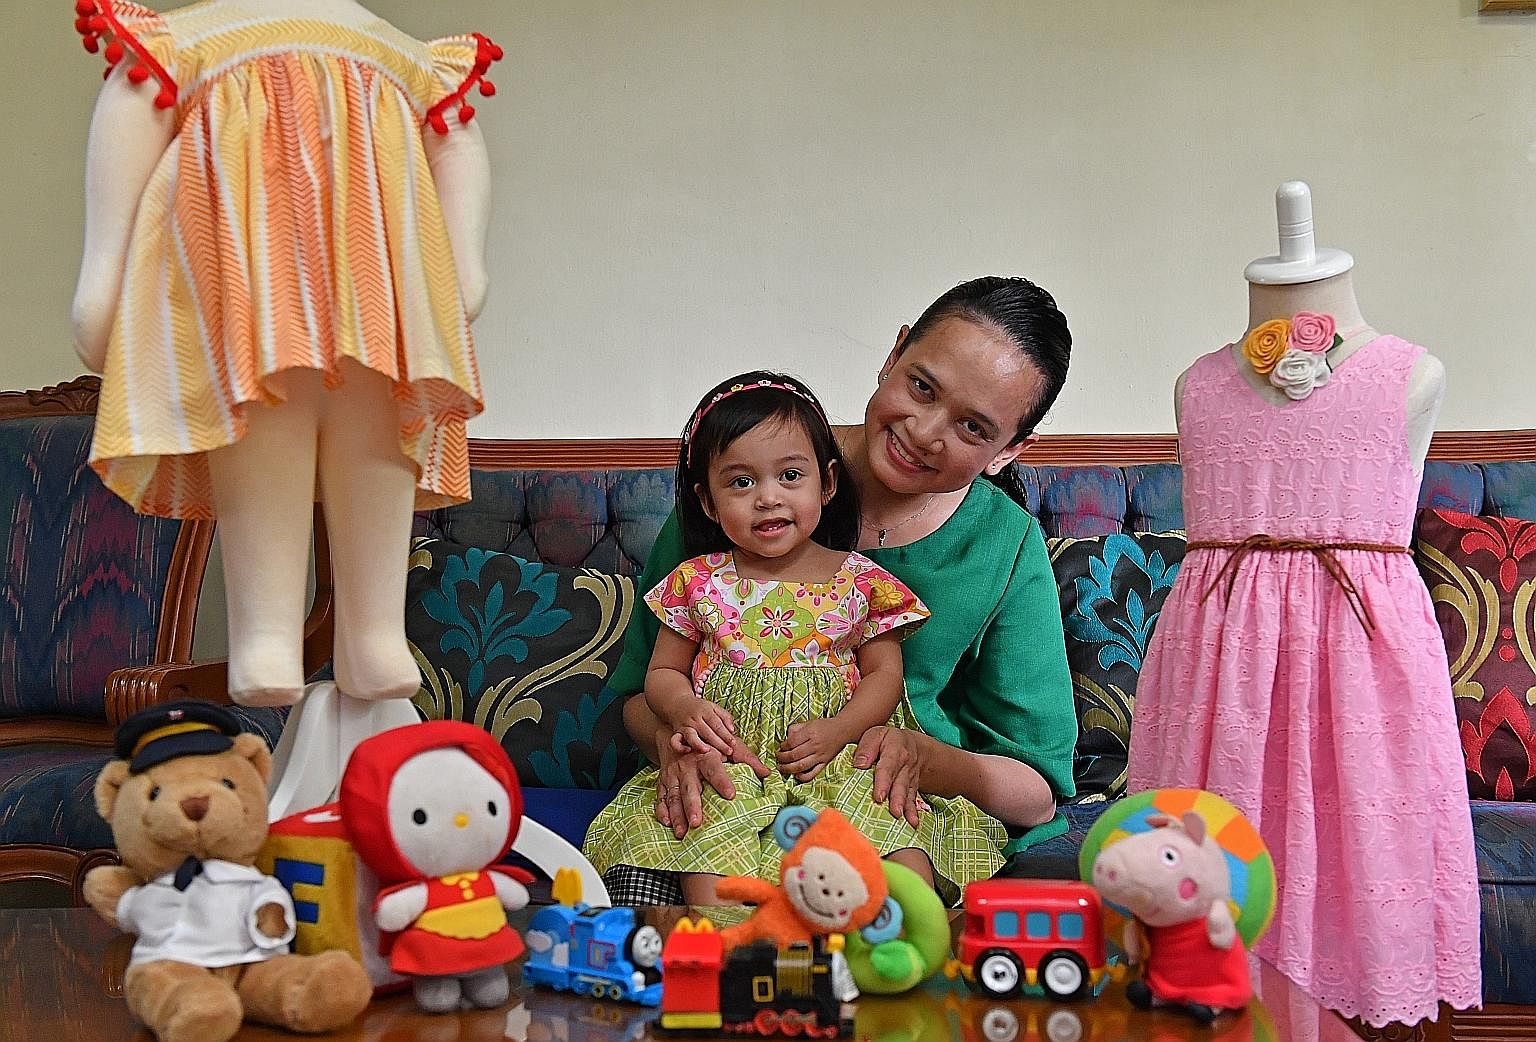 Ms Nurul Farah Niz sews clothes for her four children, including Dania, 11/2.